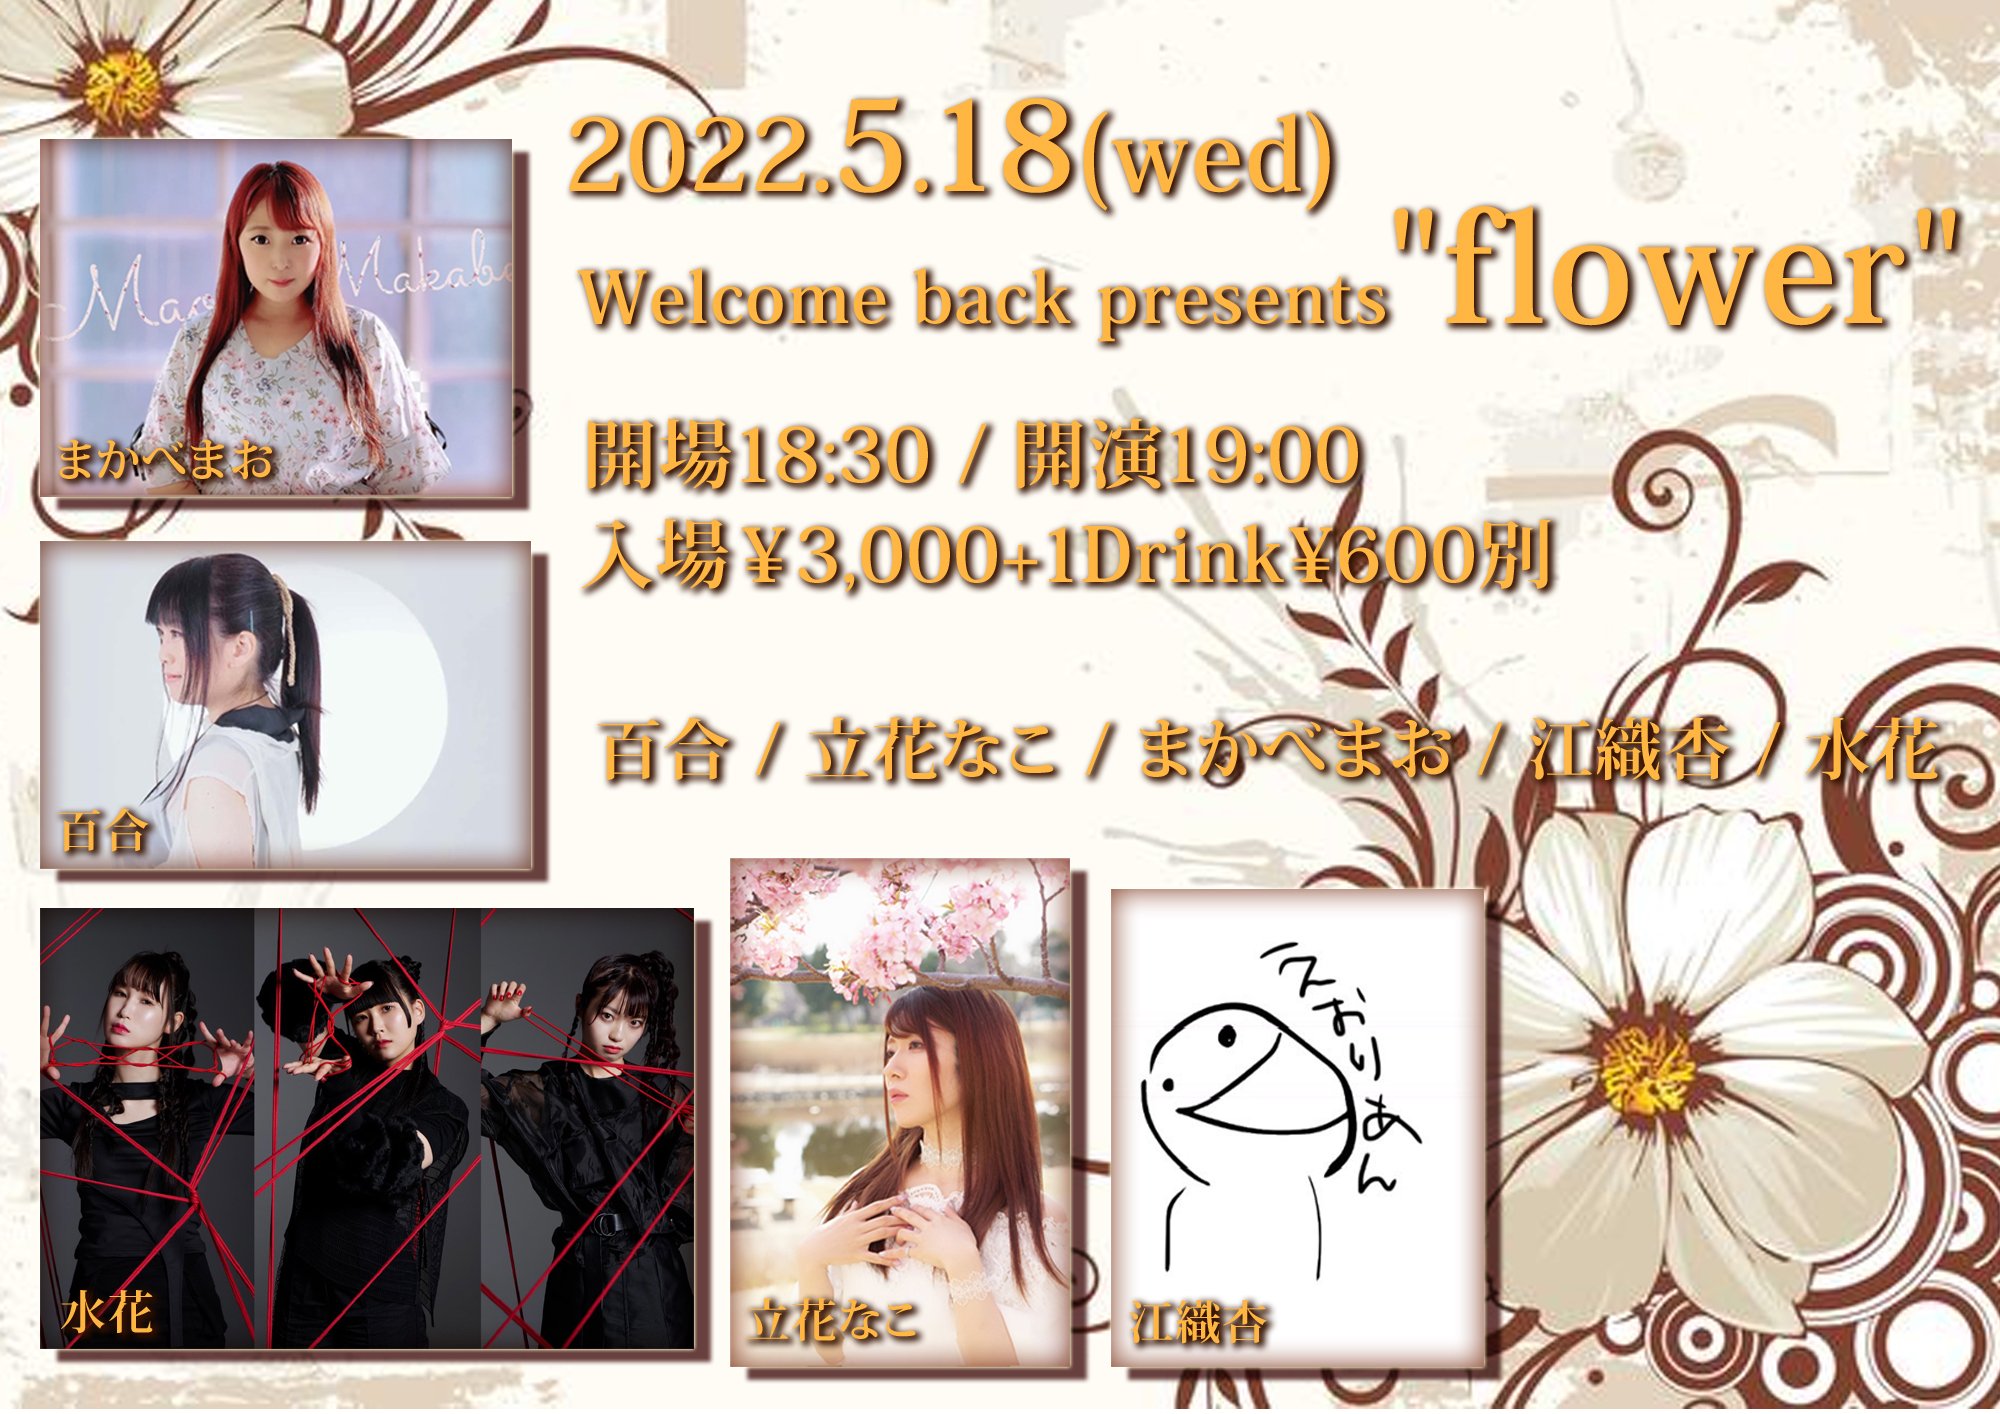 大塚welcome back 「flower」ライブ出演